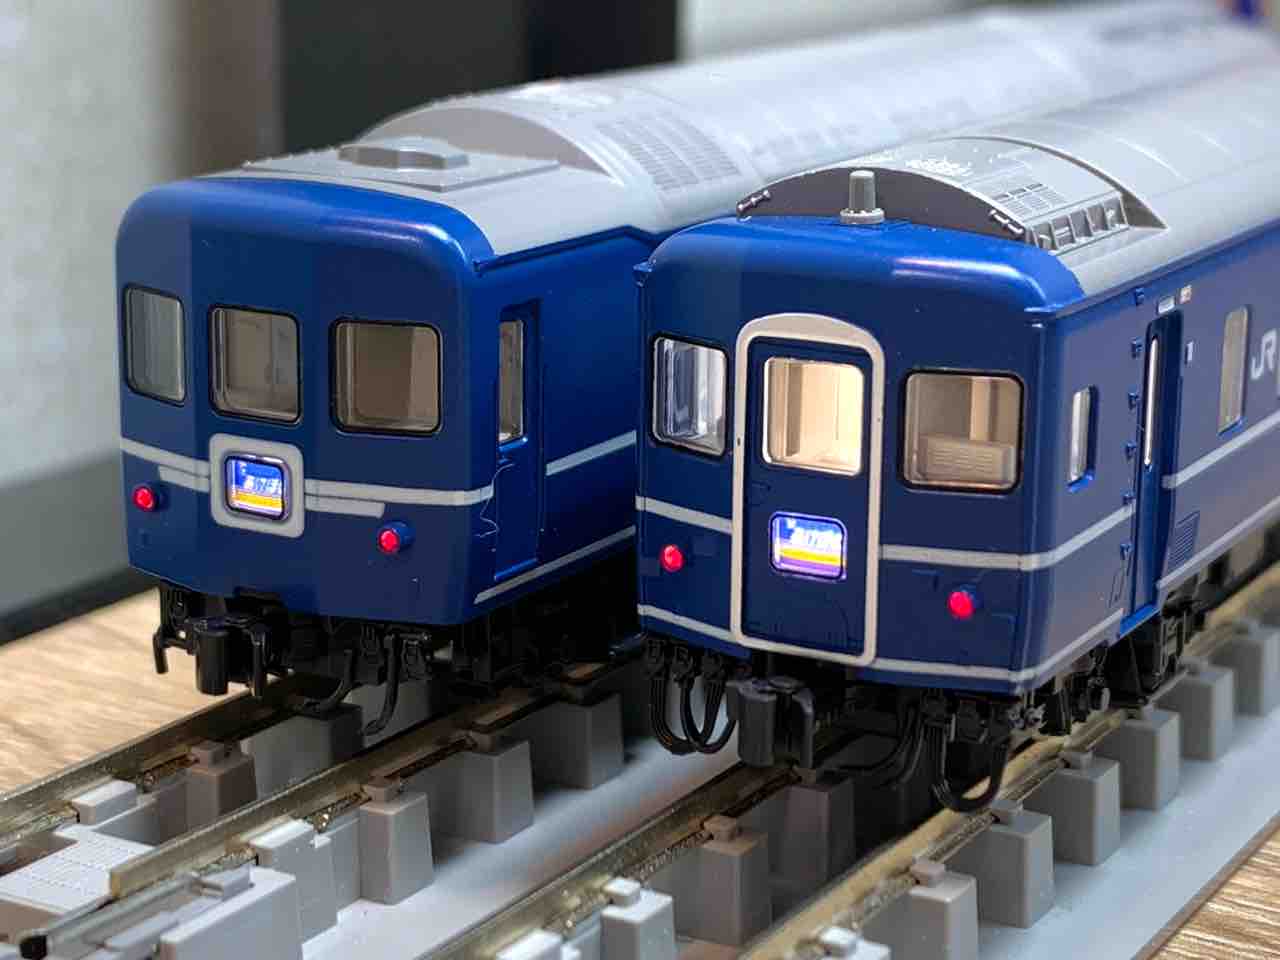 KATO Nゲージ 24系 寝台特急 あけぼの 基本 6両セット 10-822 鉄道模型 